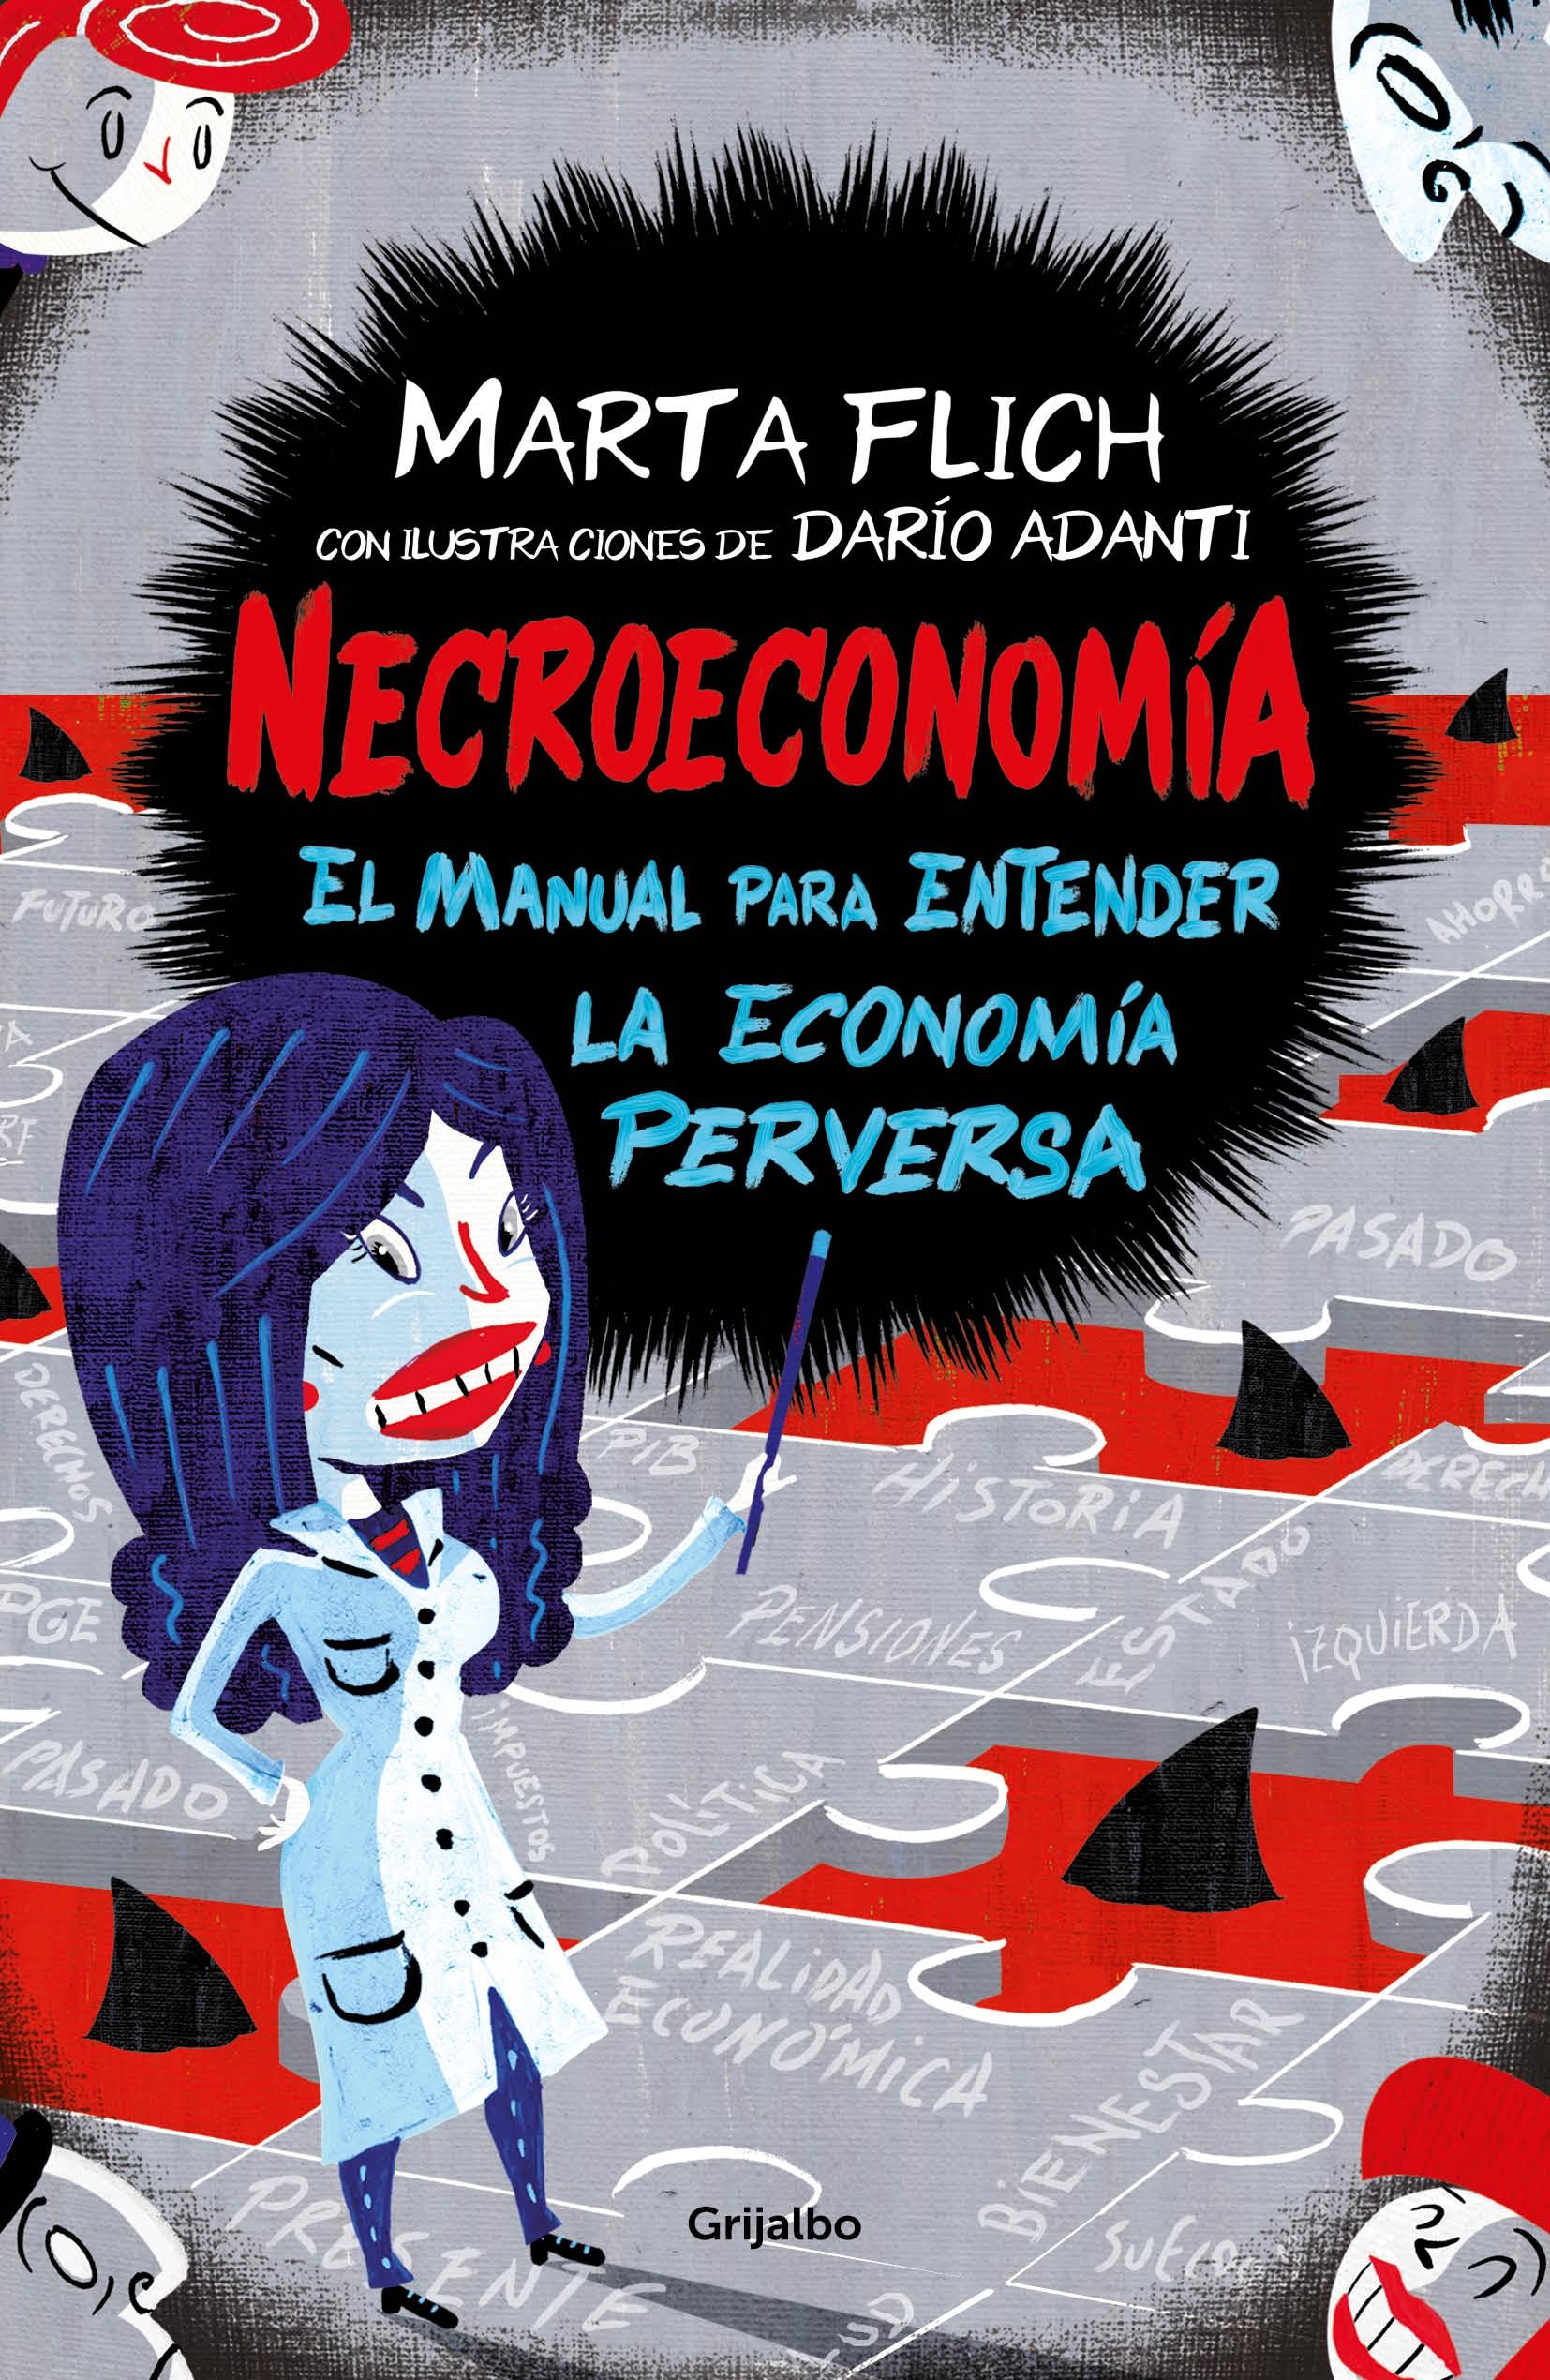 Necroeconomía "El Manual para Entender la Economía Perversa". 